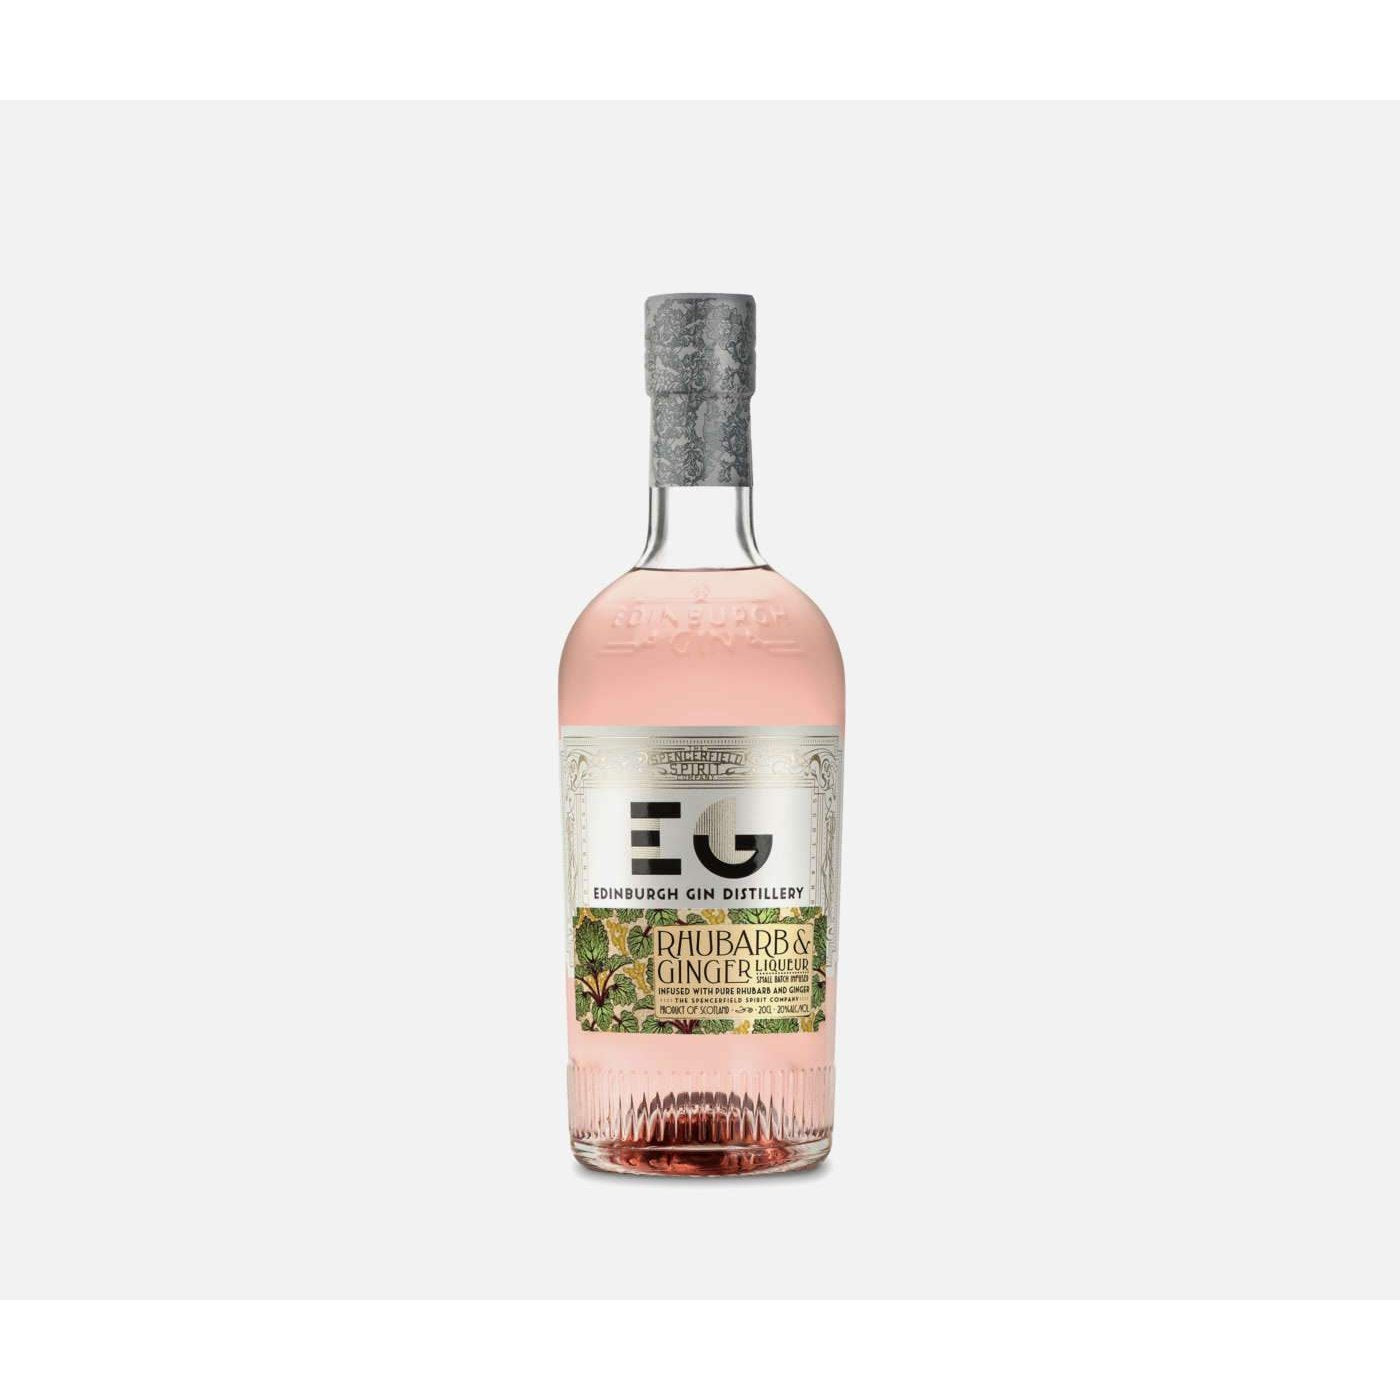 Edinburgh Gin's Rhubarb & Ginger Liqueur 20cl-Gin-5060232070641-Fountainhall Wines